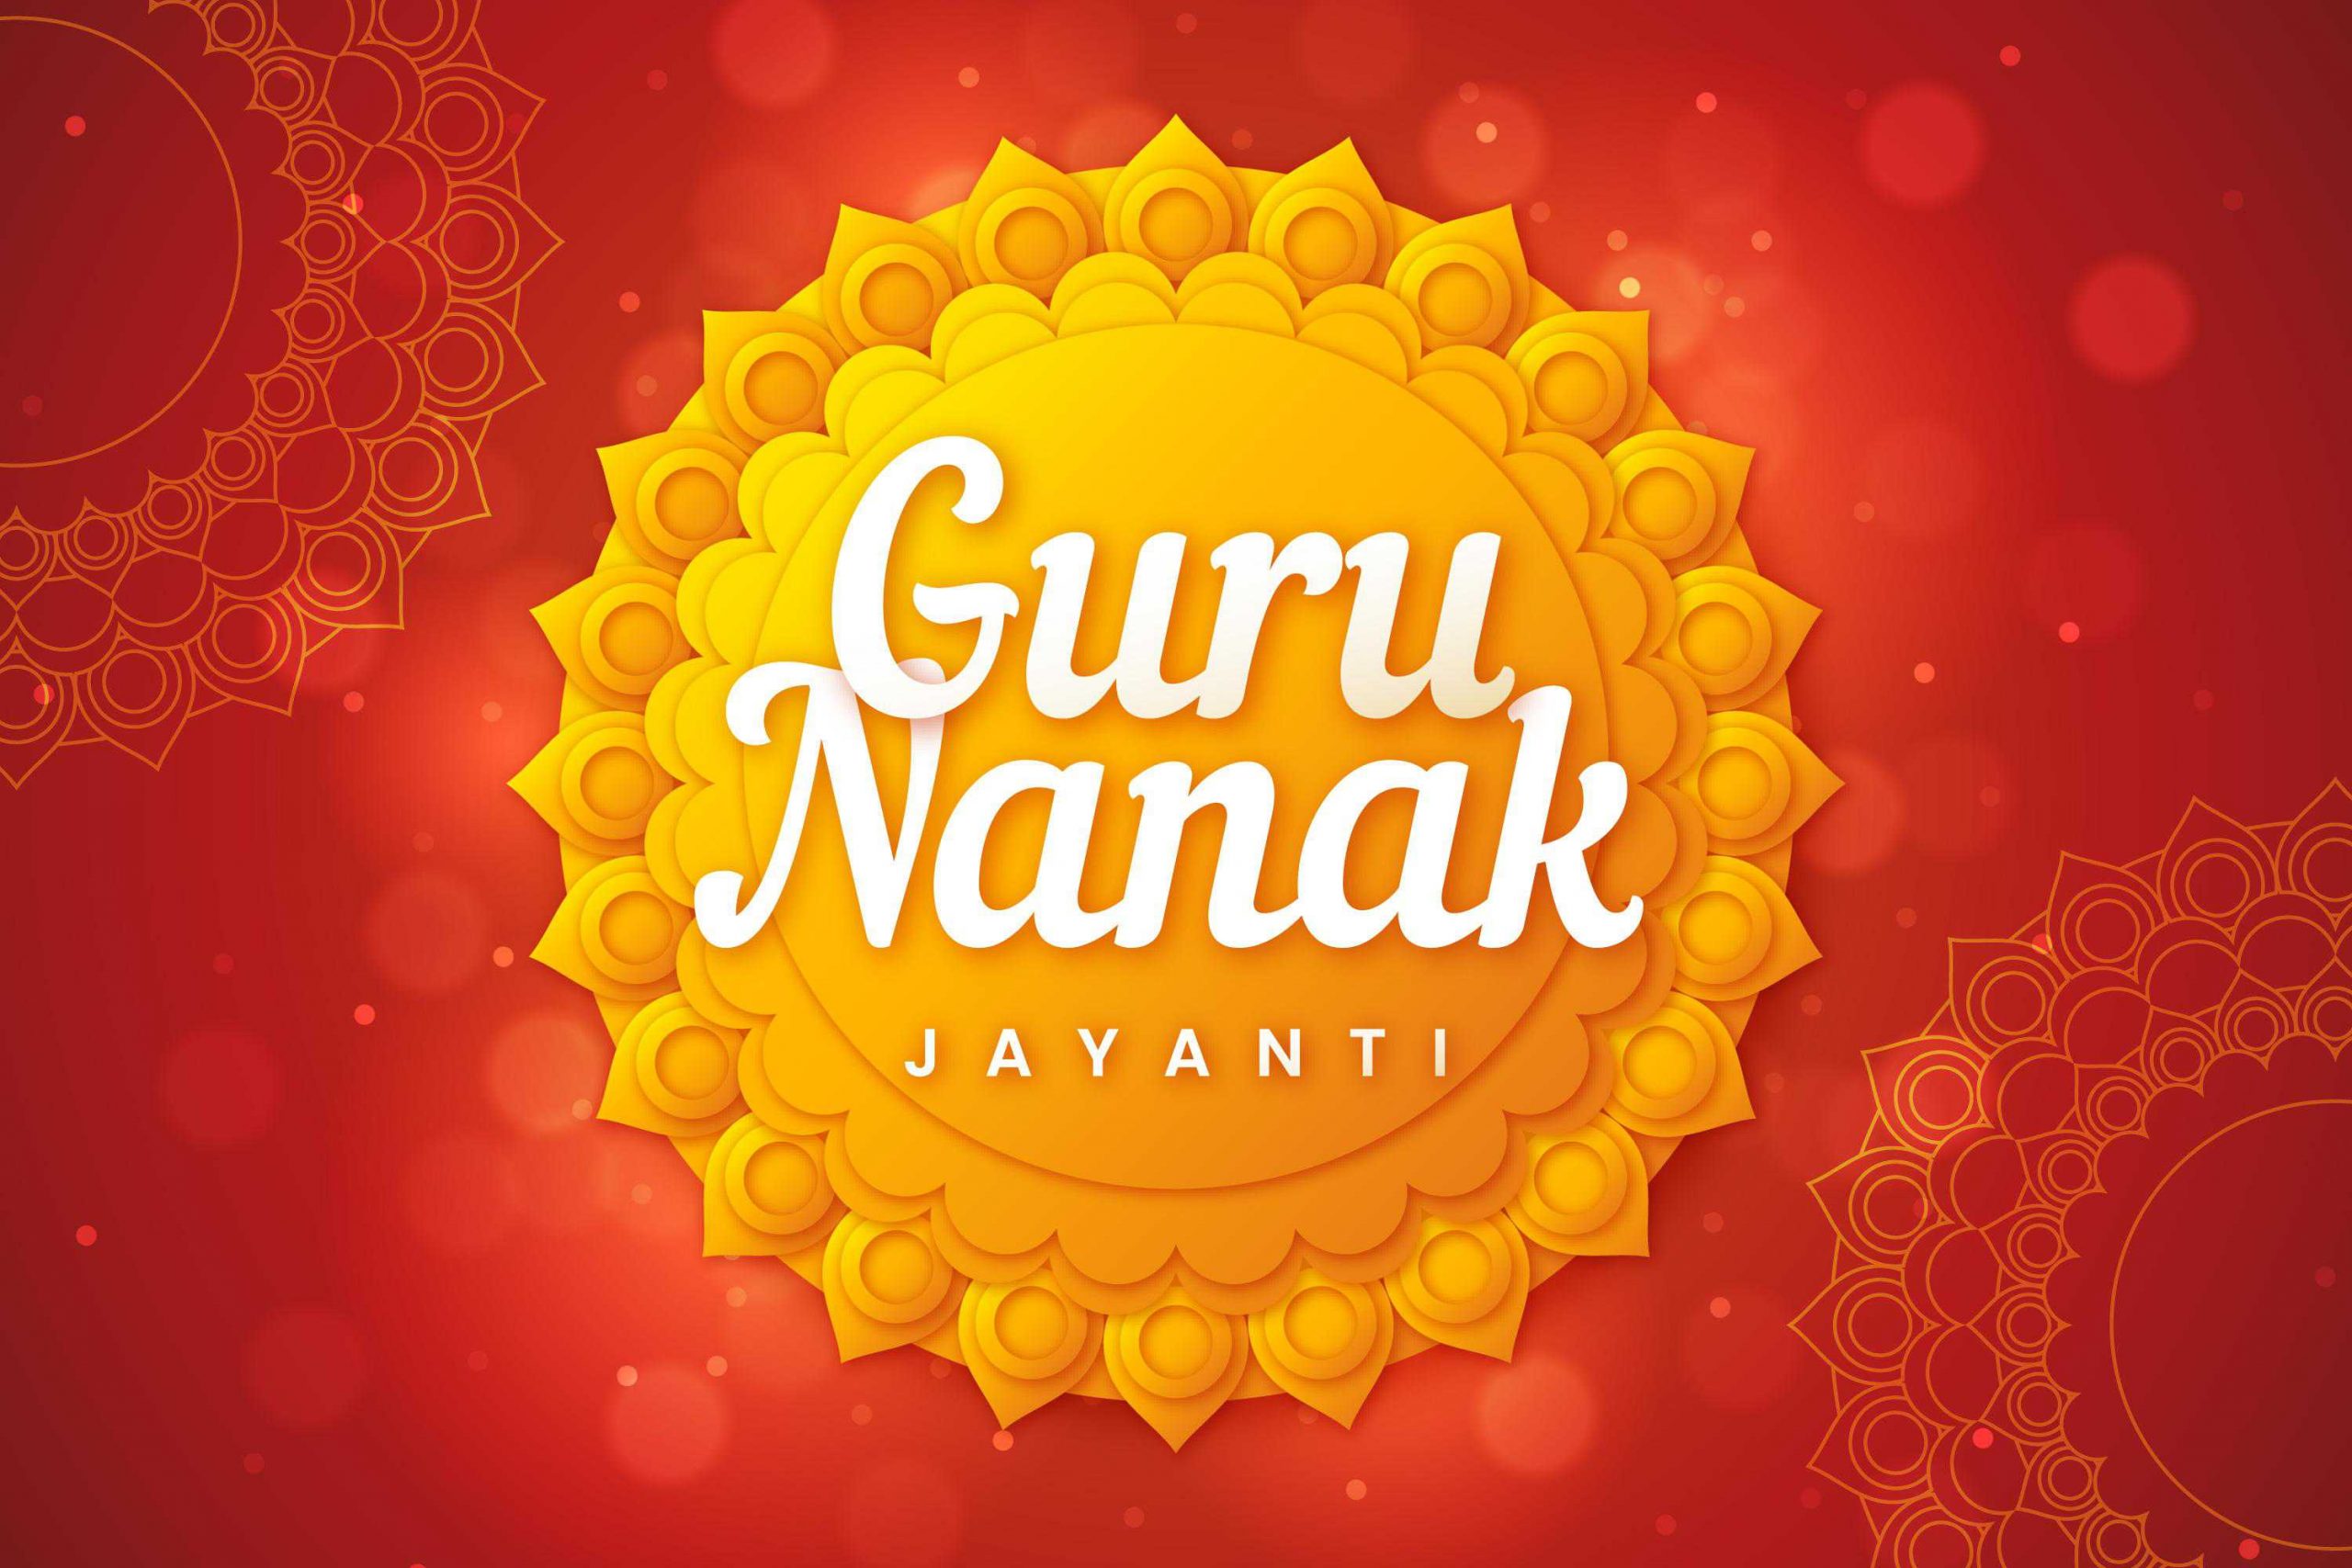 Happy guru nanak jayanti pictures